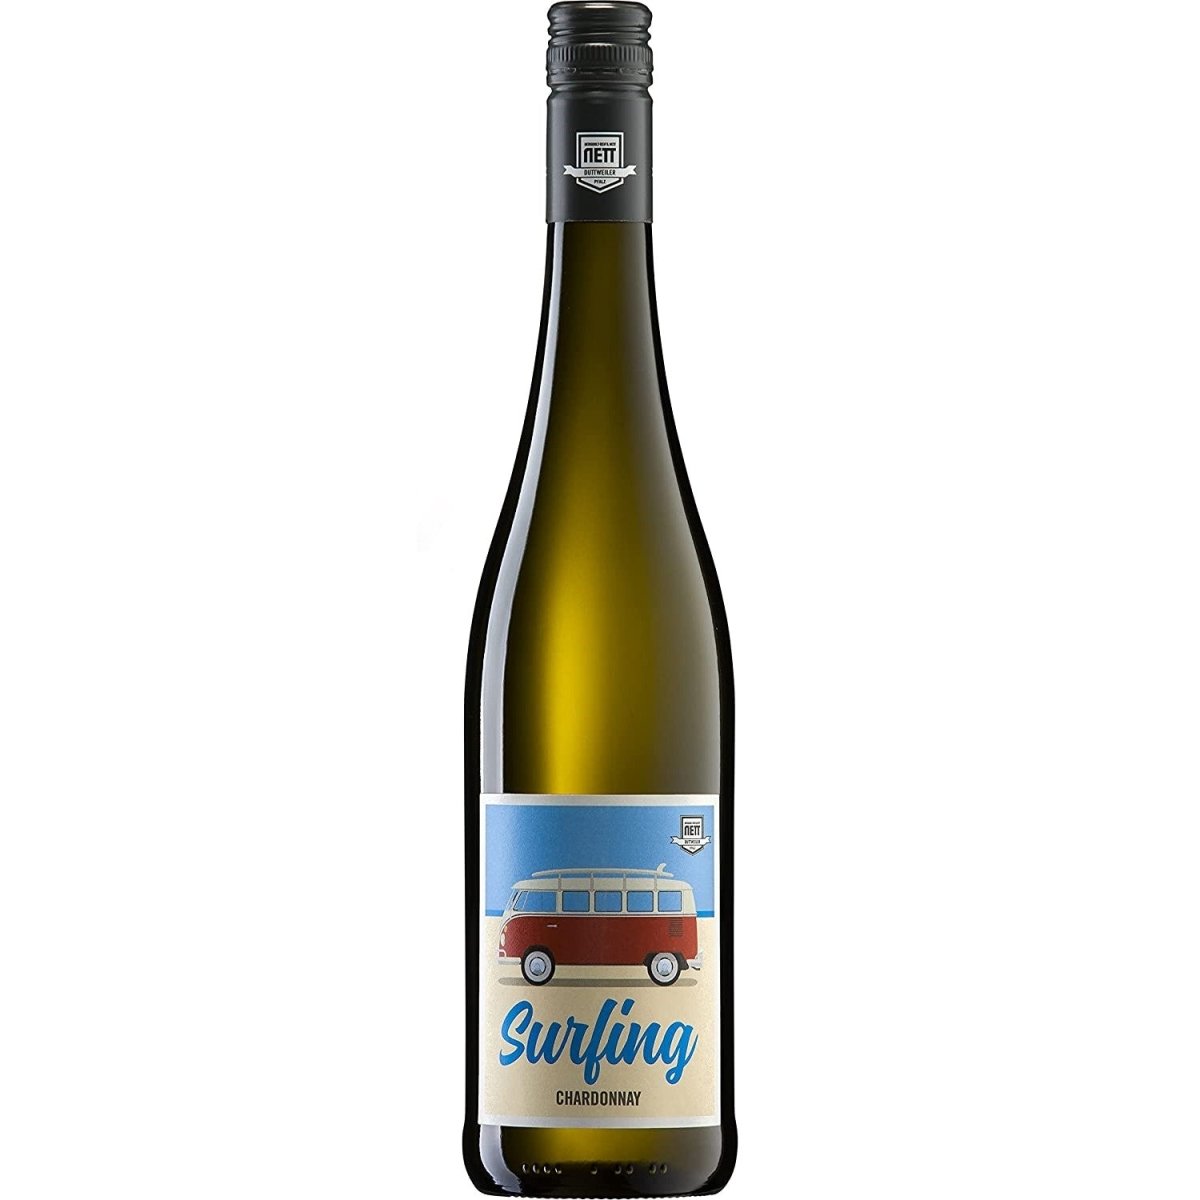 Bergdolt-Reif & Nett Surfing Chardonnay Weißwein Wein trocken Pfalz (12 x 0,75l) - Versanel -